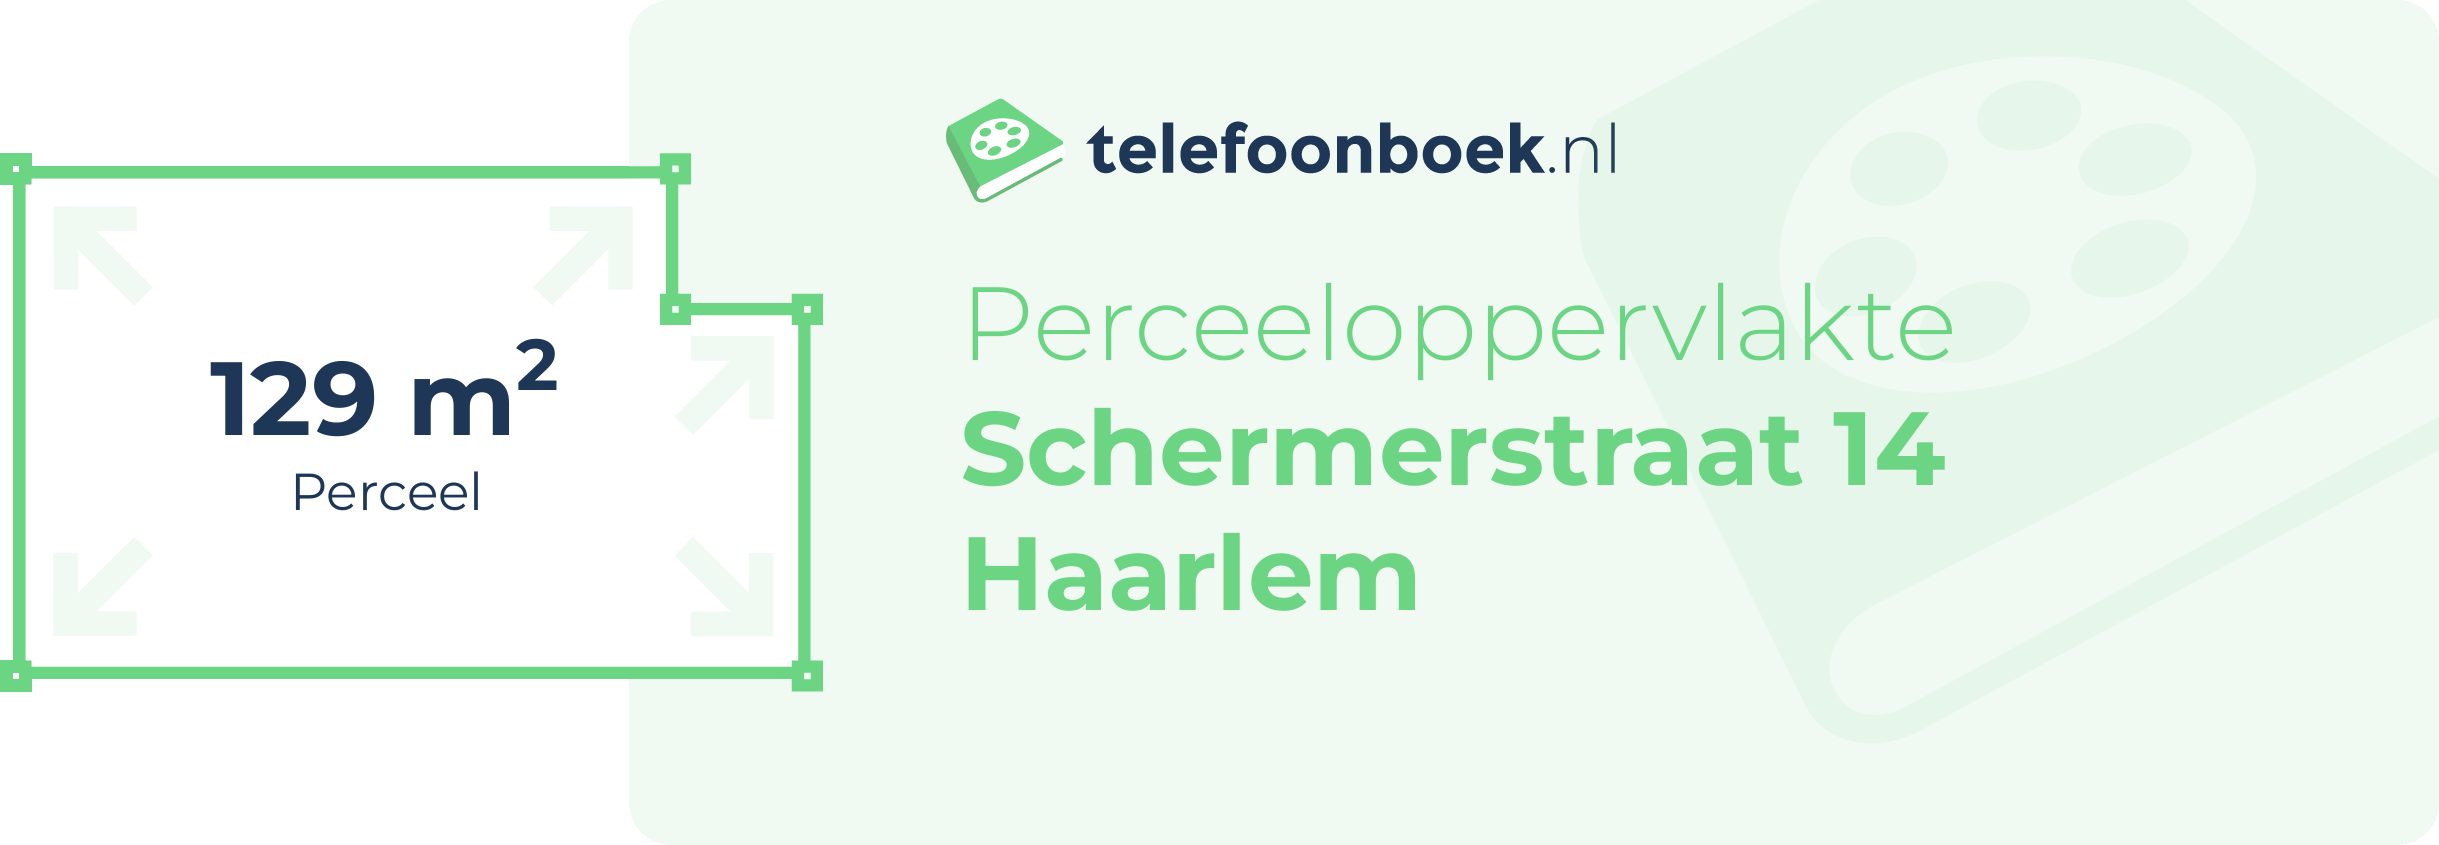 Perceeloppervlakte Schermerstraat 14 Haarlem